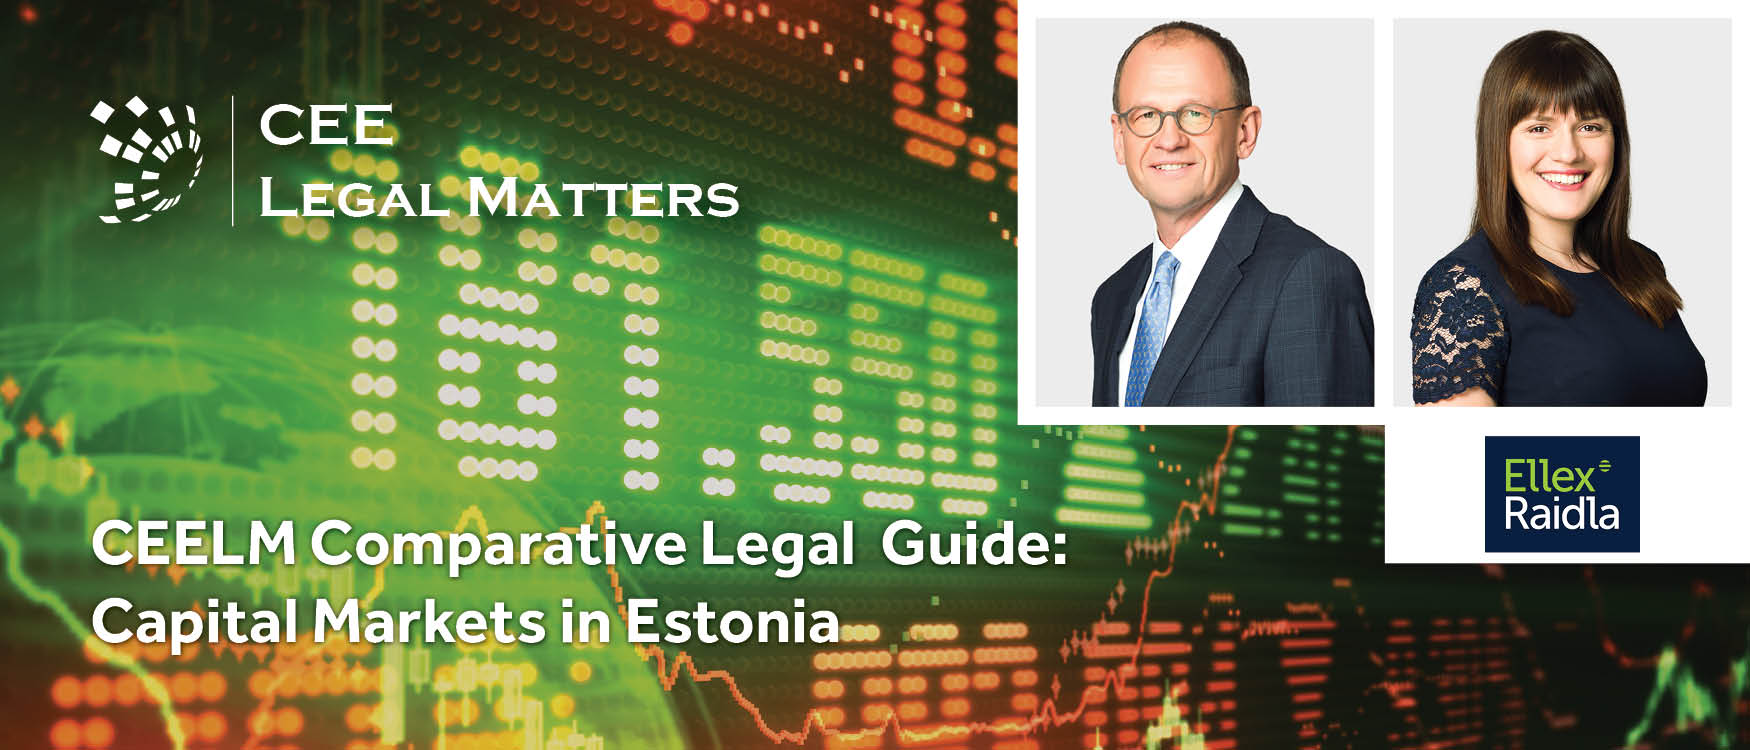 Capital Markets in Estonia